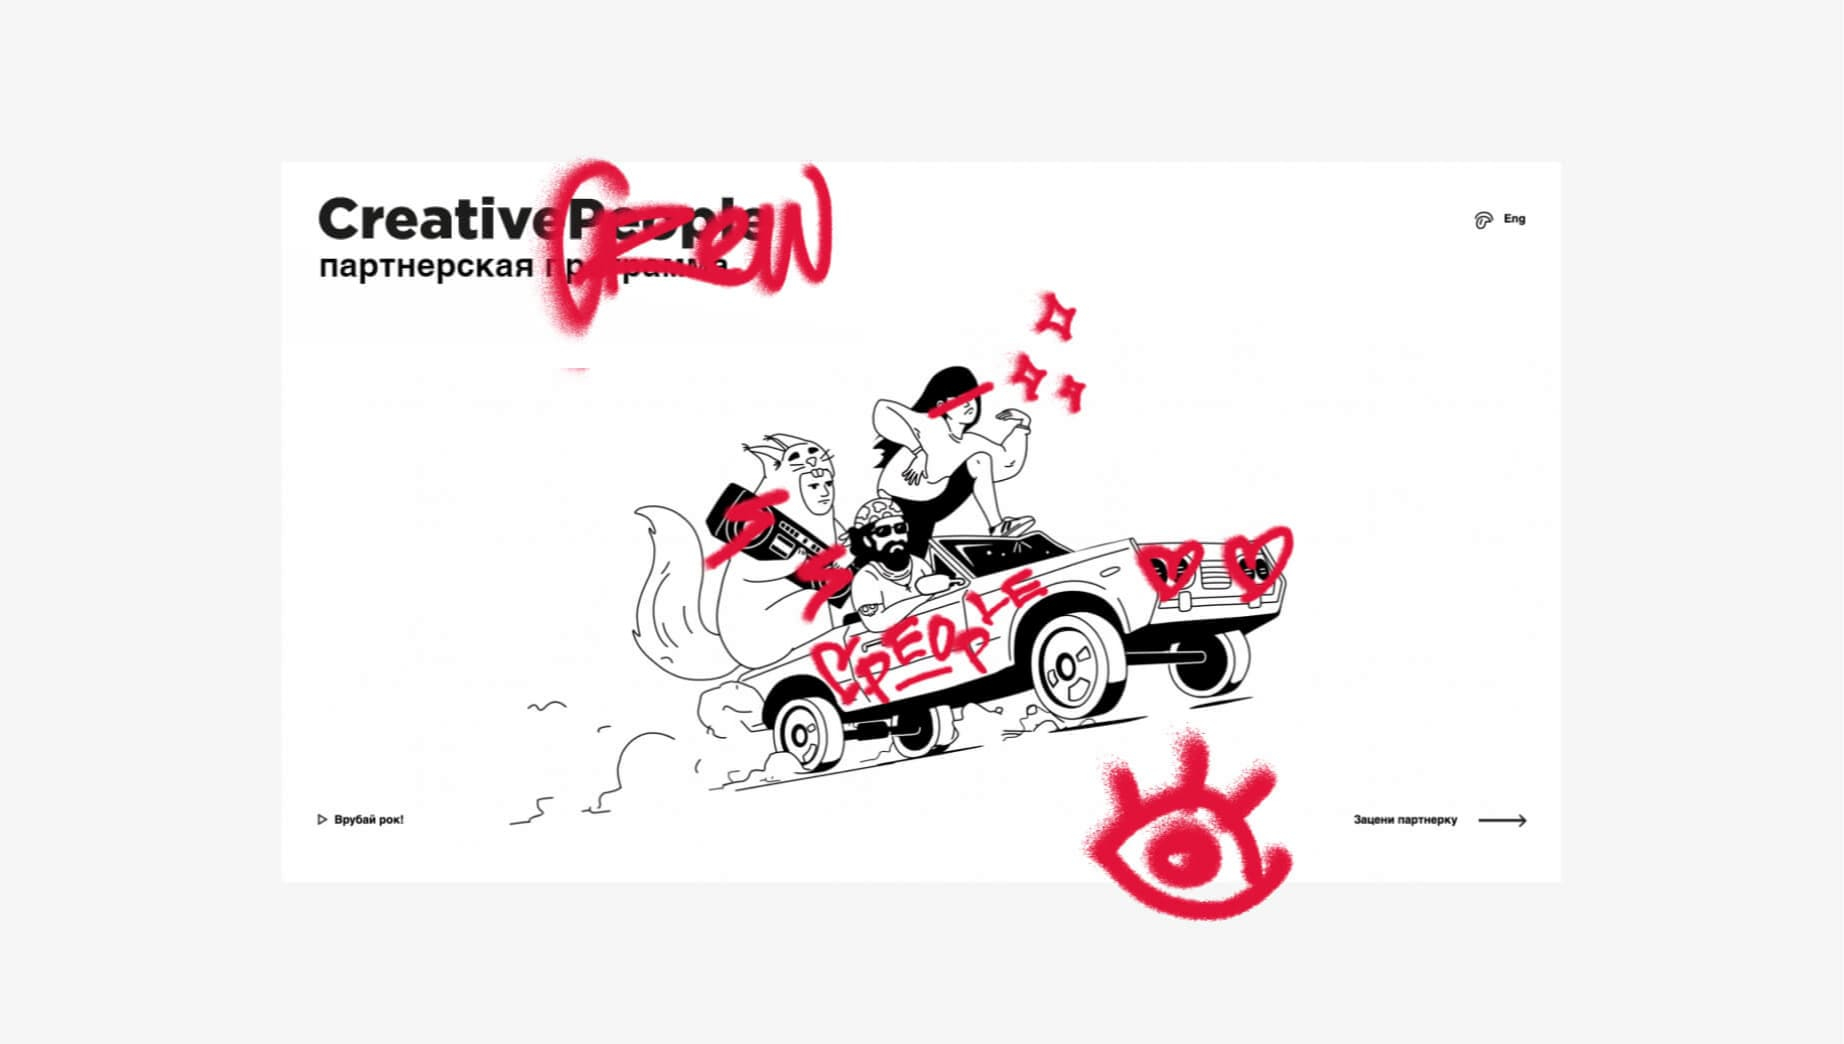 CreativePeople: «Мы всегда были дизайнерами-перфекционистами». Читайте на prachka-mira.ru